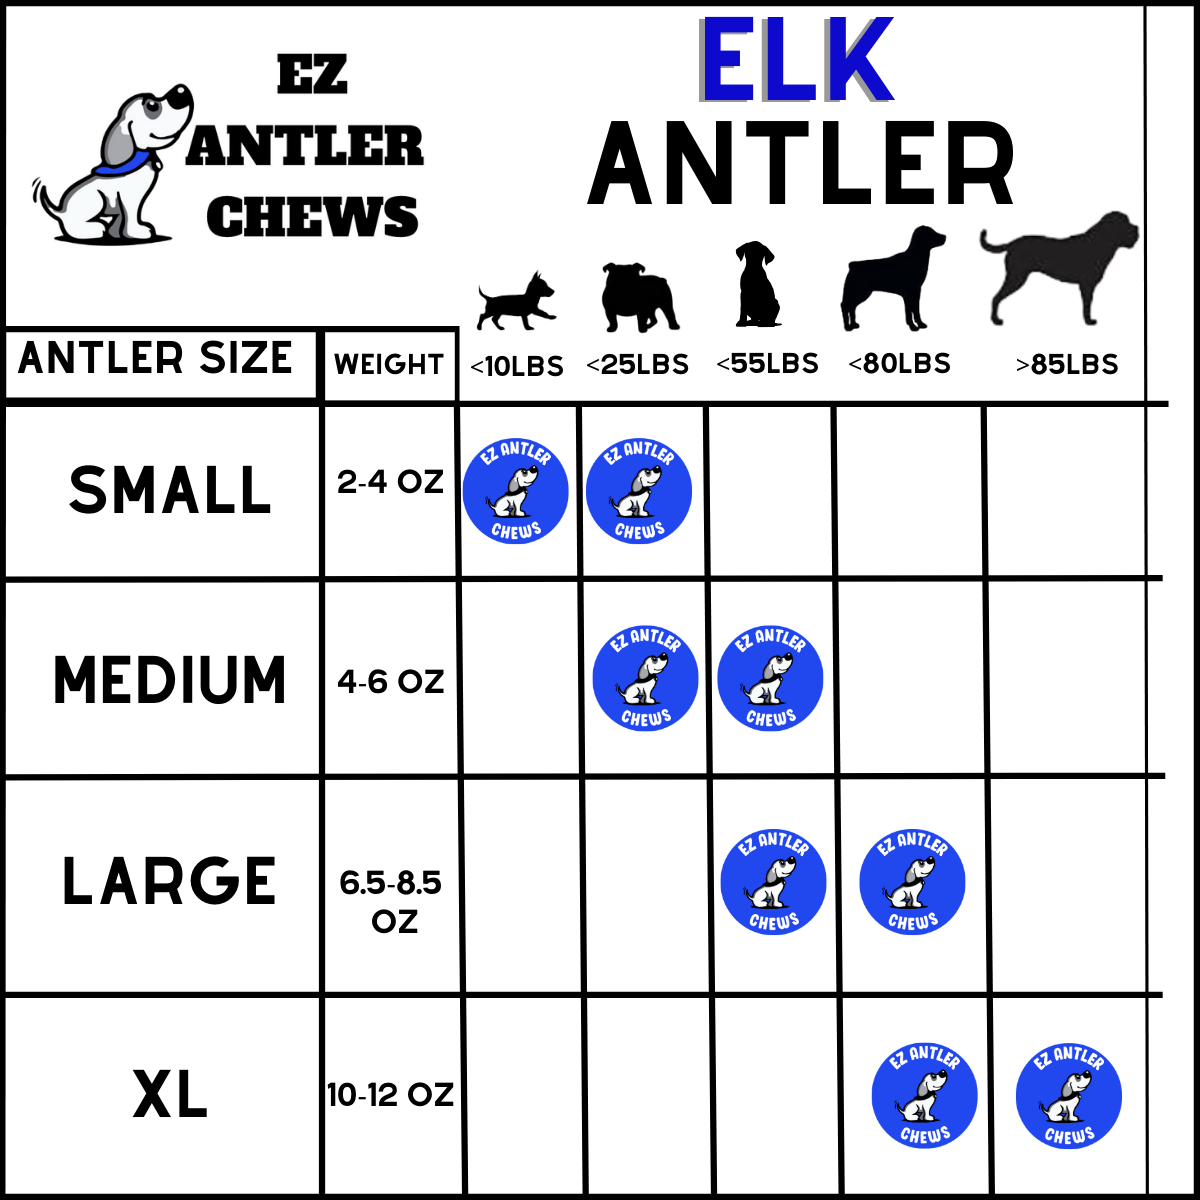 XL Elk Antler Chews (Over 85lb)